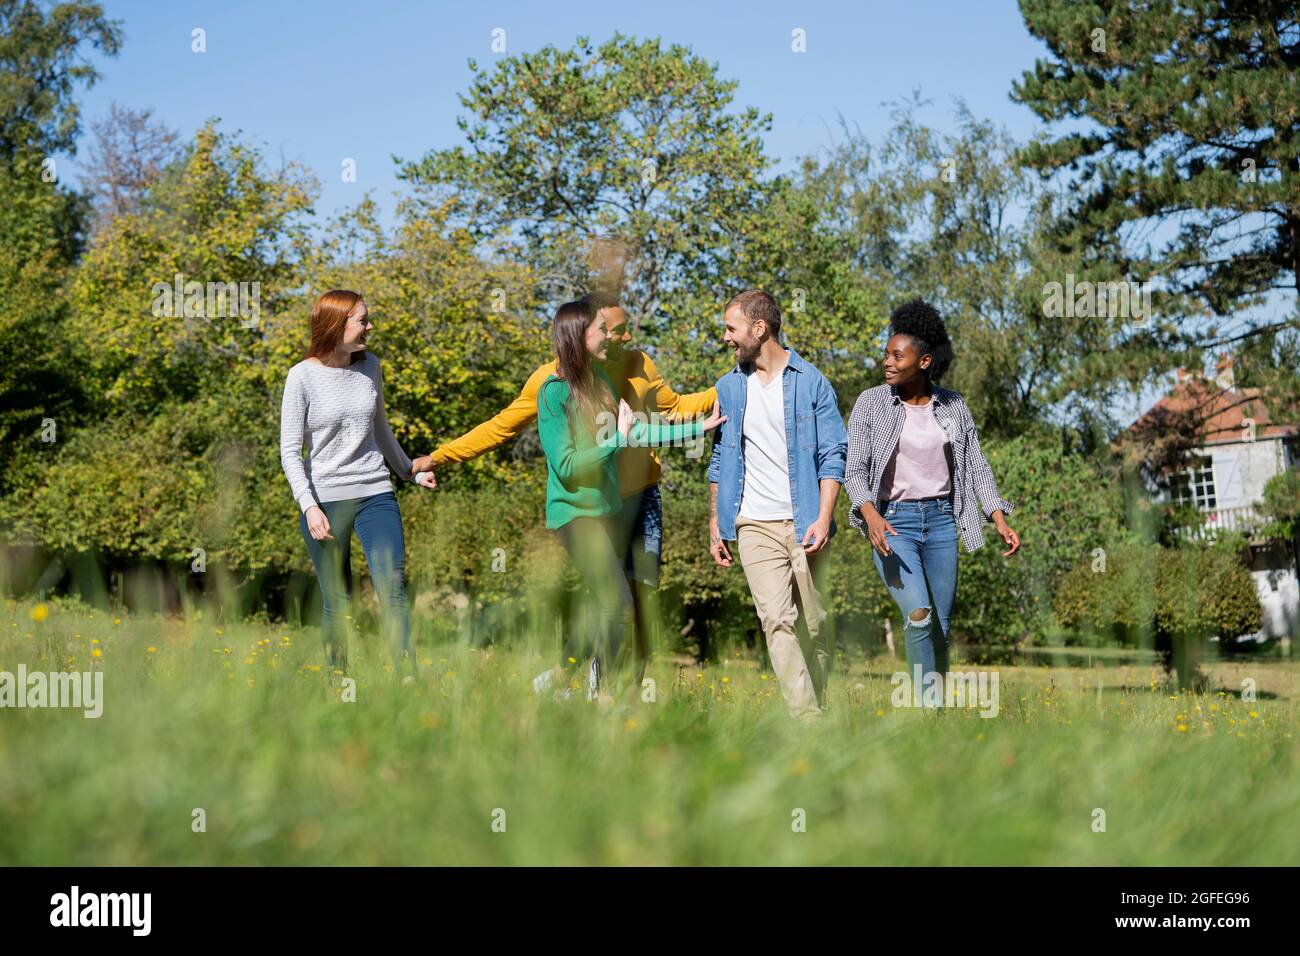 Glückliche junge Freunde, die Spaß haben, während sie zusammen im Park spazieren gehen Stockfoto